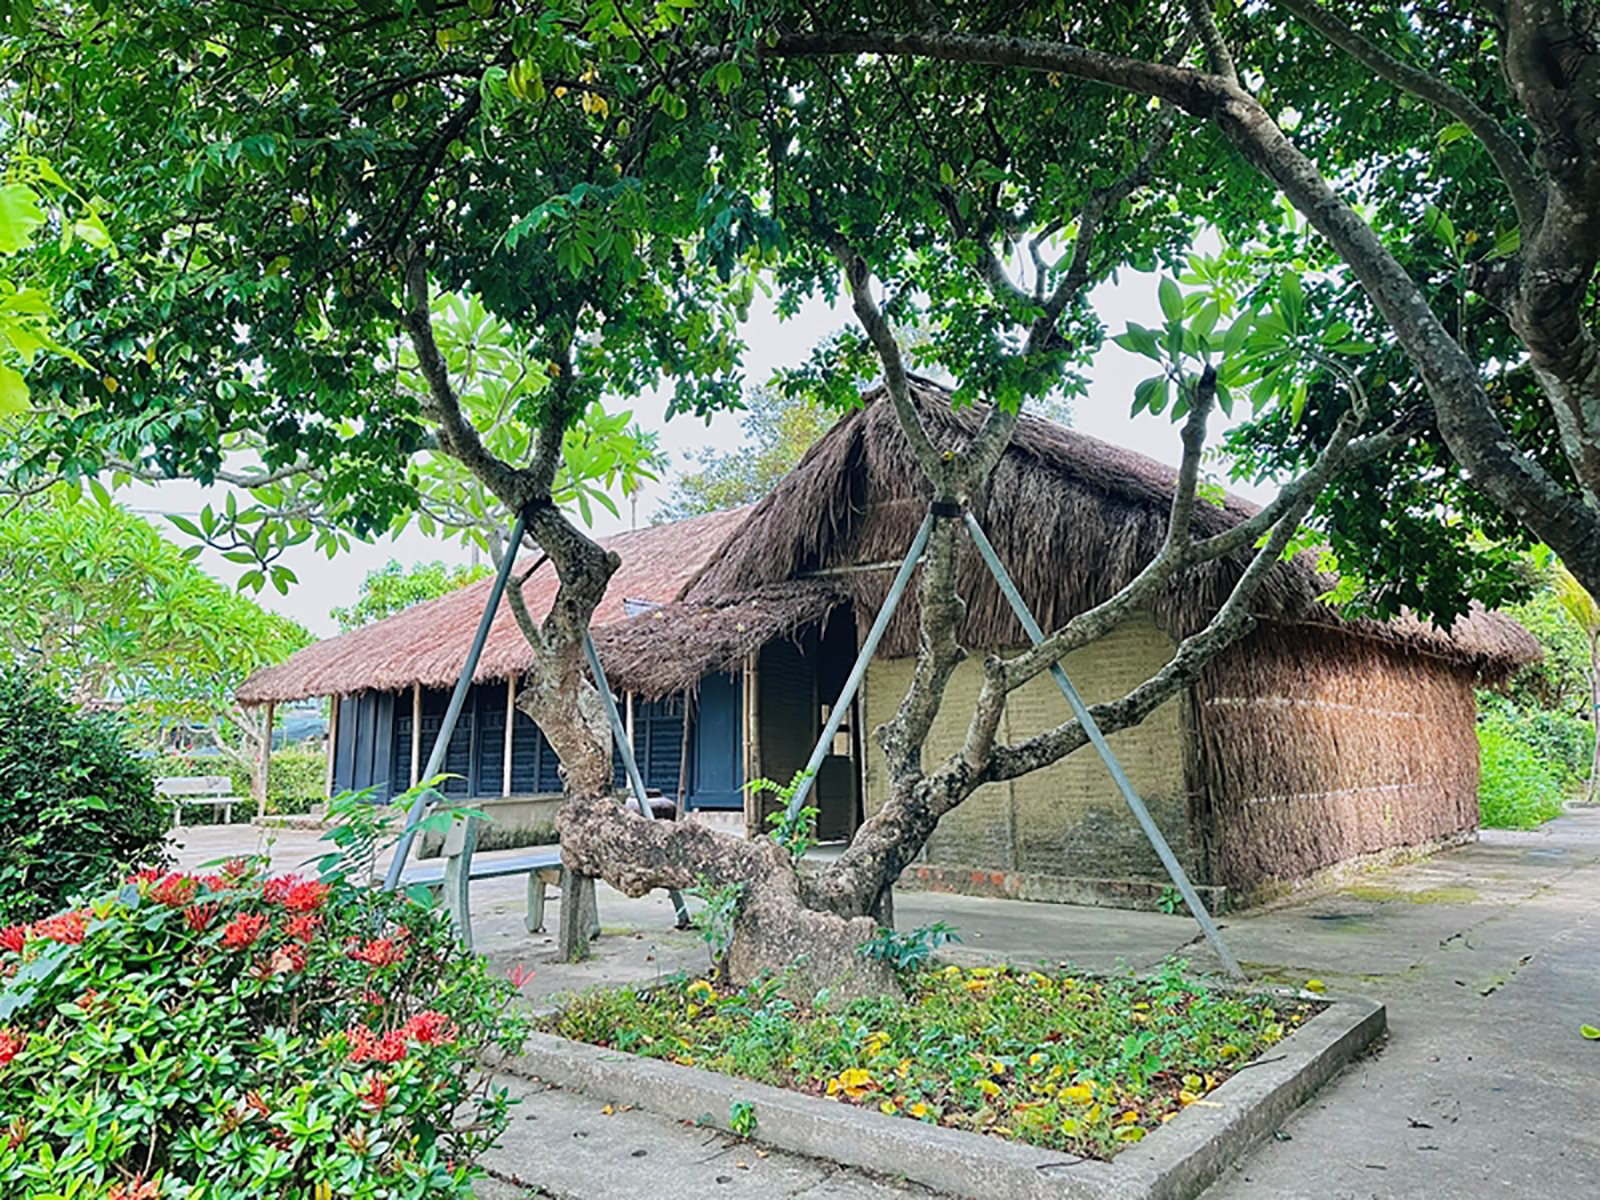 Ngôi nhà làng Dương Nỗ - nơi Bác Hồ từng sinh sống được bảo tồn và xếp hạng di tích quốc gia đặc biệt. Nguồn: dangcongsan.vn